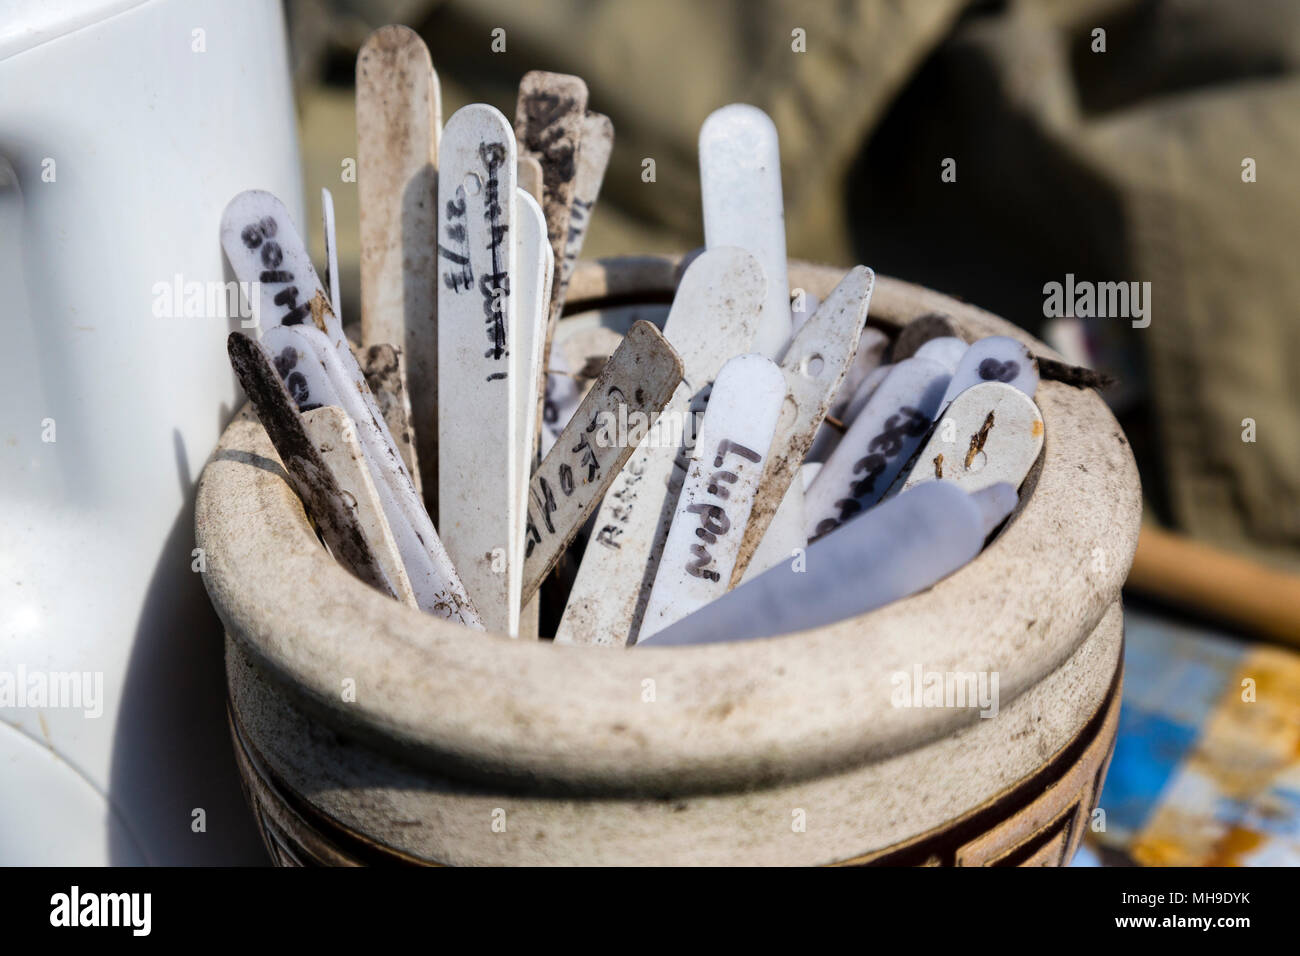 Planta de etiquetas y marcadores en una vasija de cerámica Foto de stock